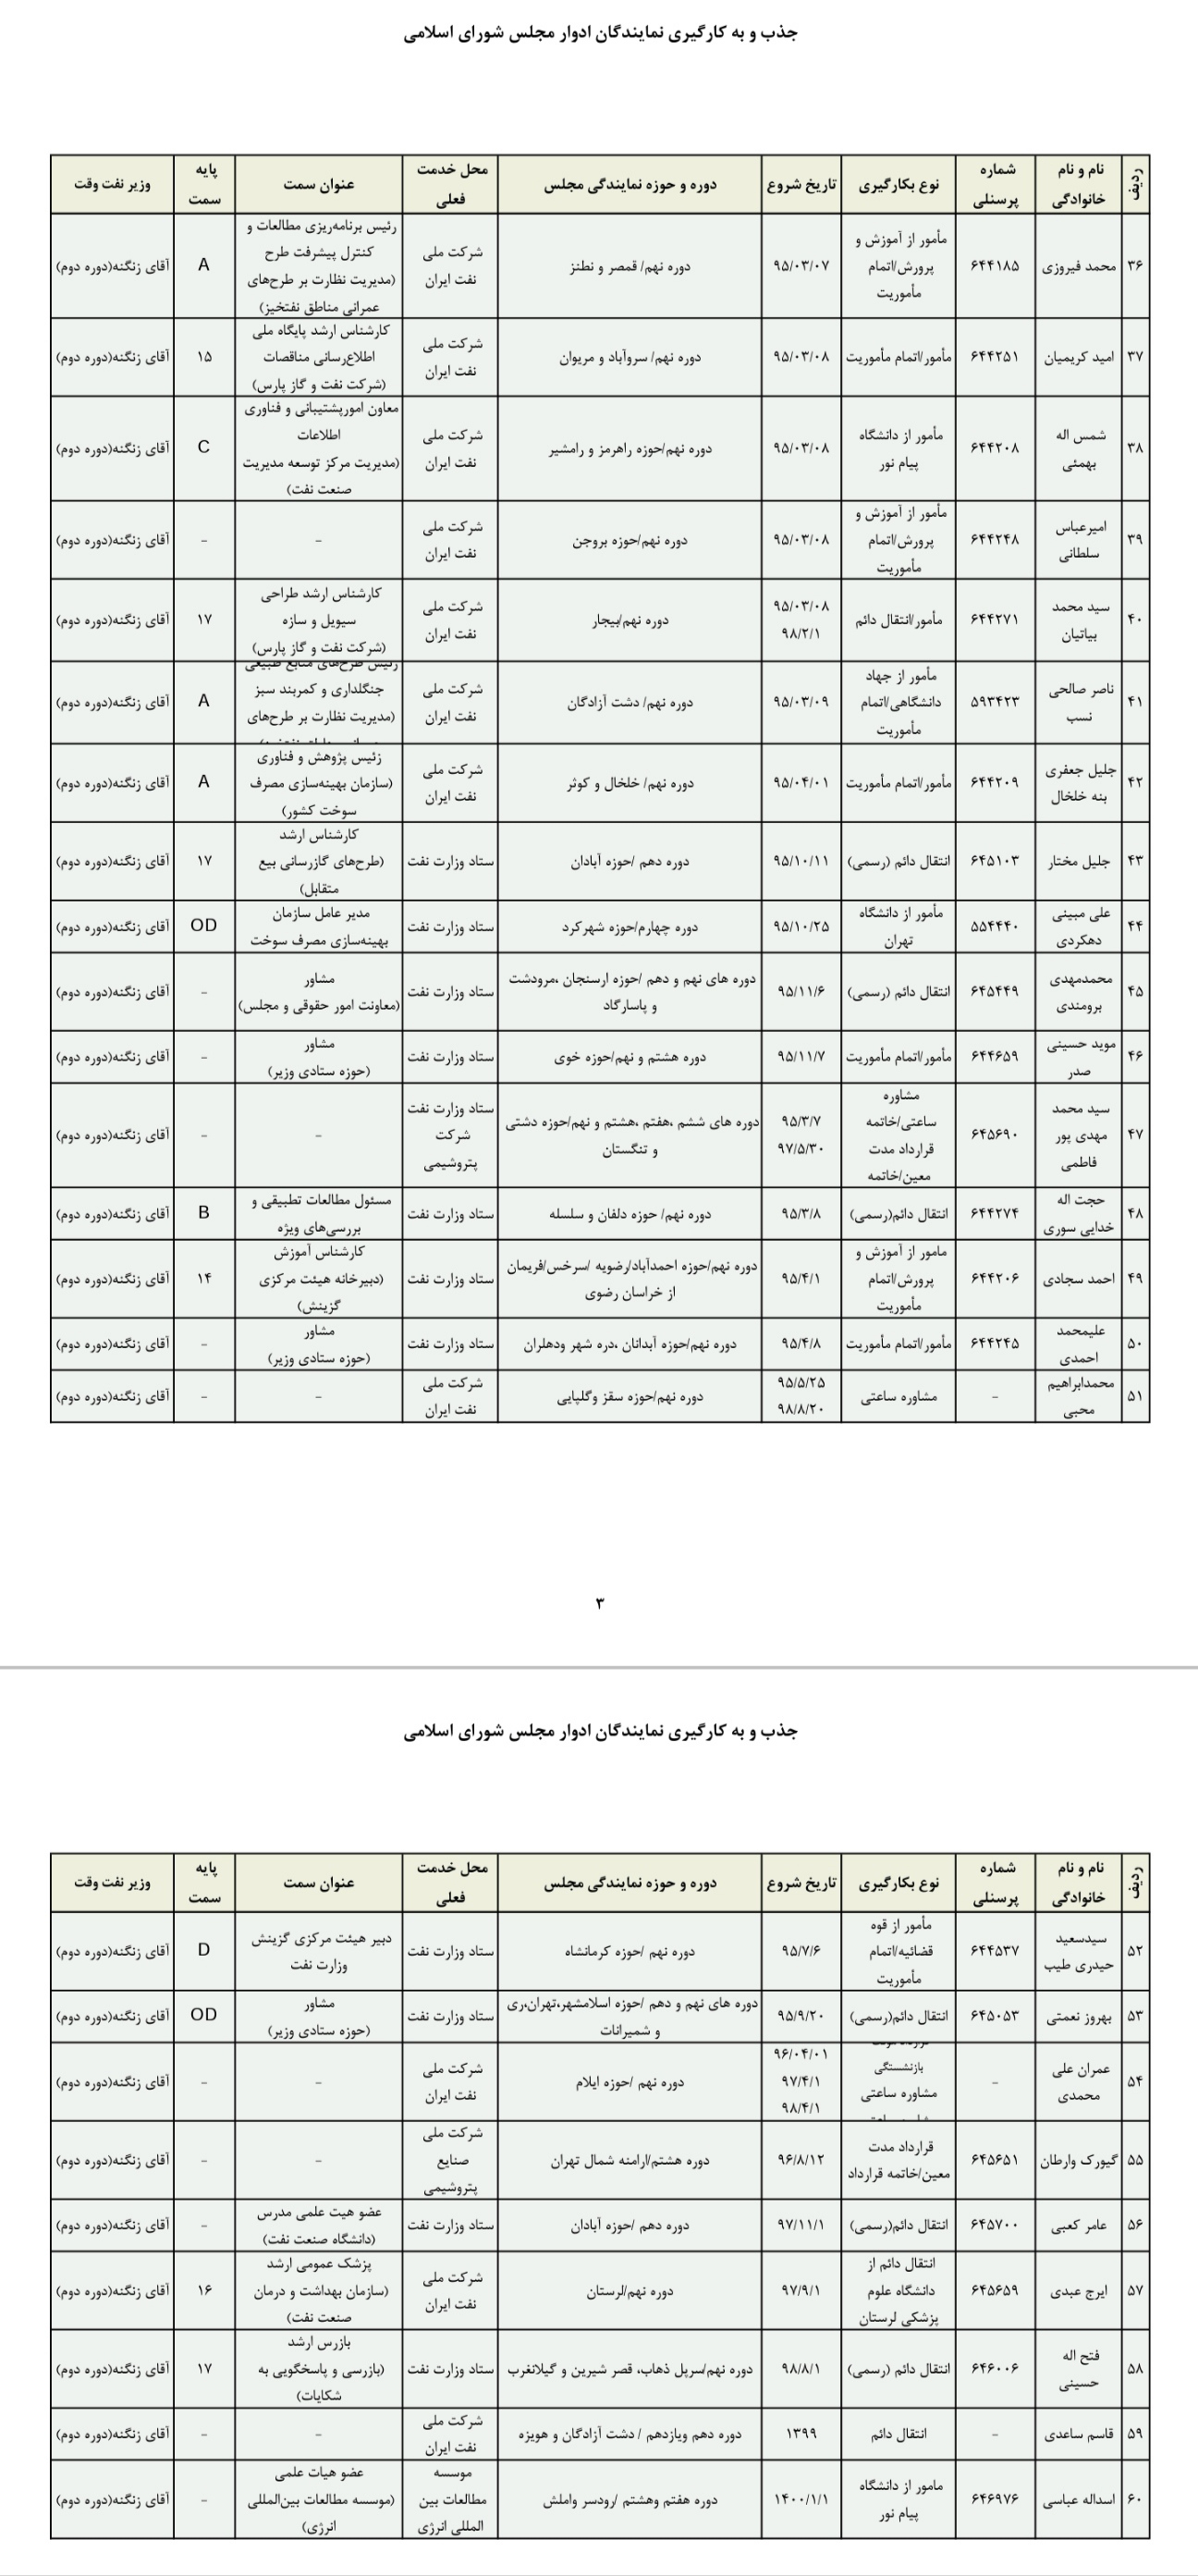 اسامی تعدادی از نمایندگان مجلس که با دستور زنگنه به استخدام وزارت نفت درآمدند یا به این وزارتخانه منتقل شدند